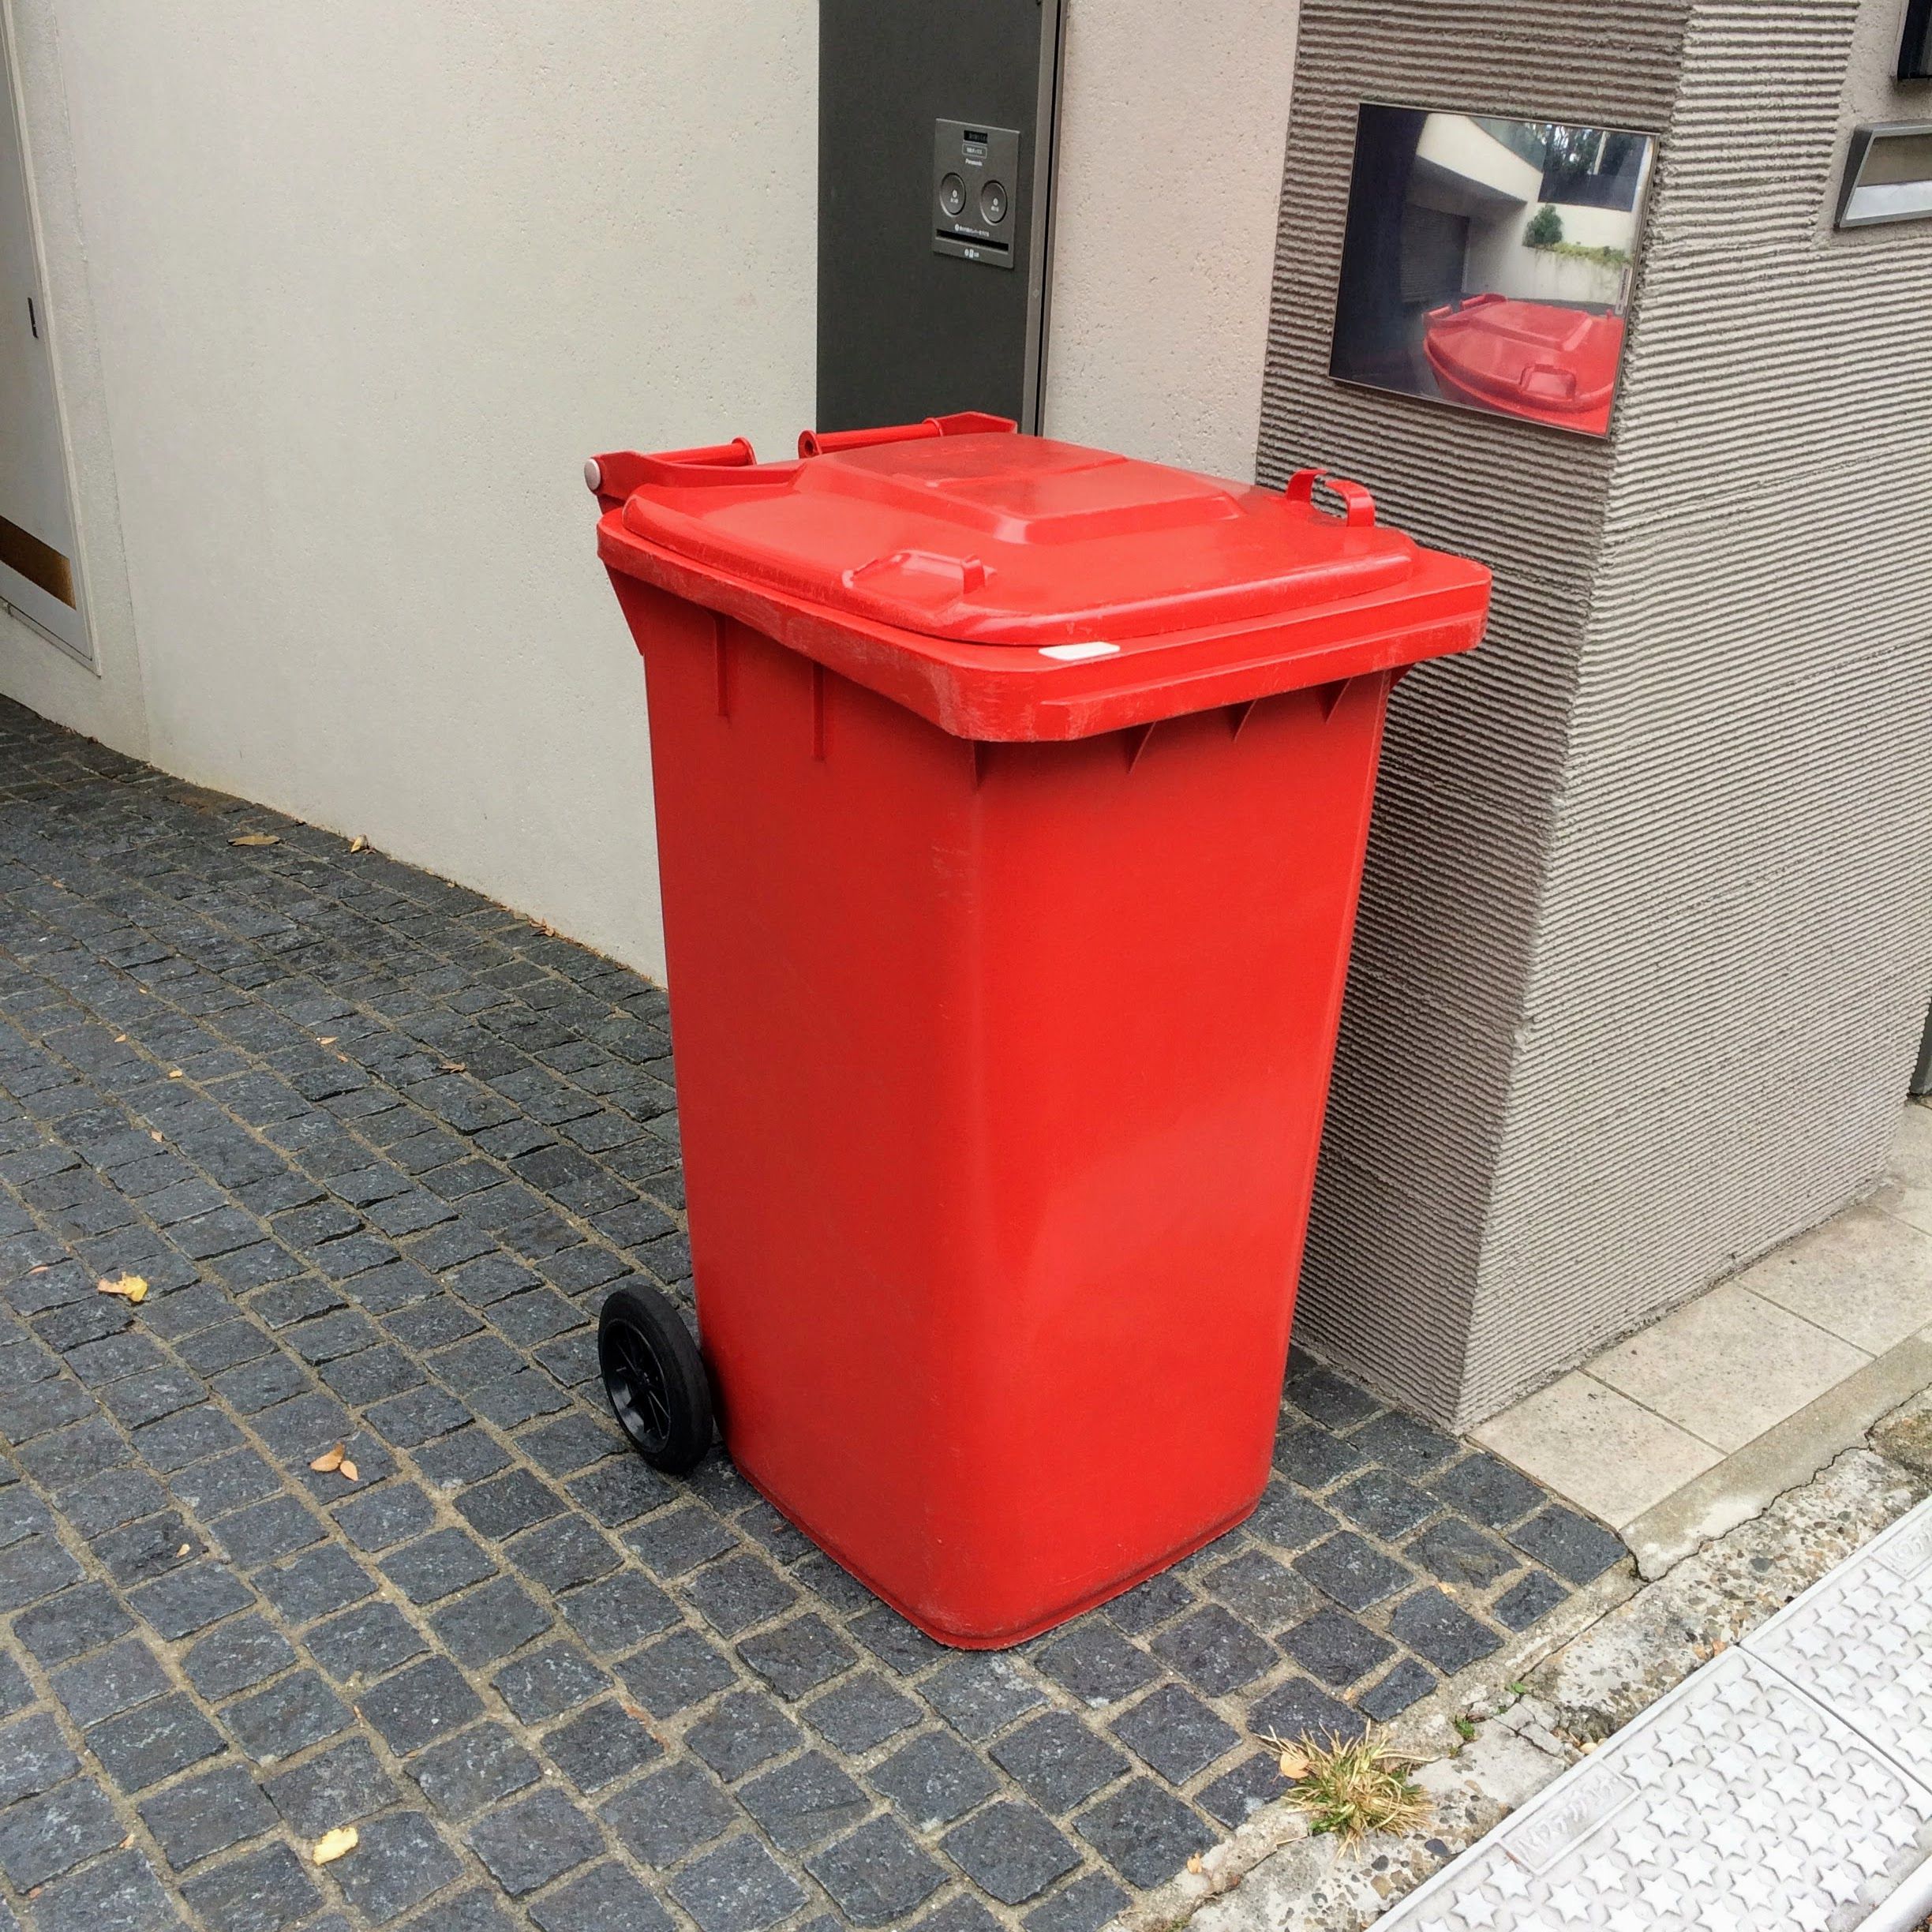 このような赤くおしゃれなゴミ箱以外にも様々なゴミ箱の様子が観察できる。